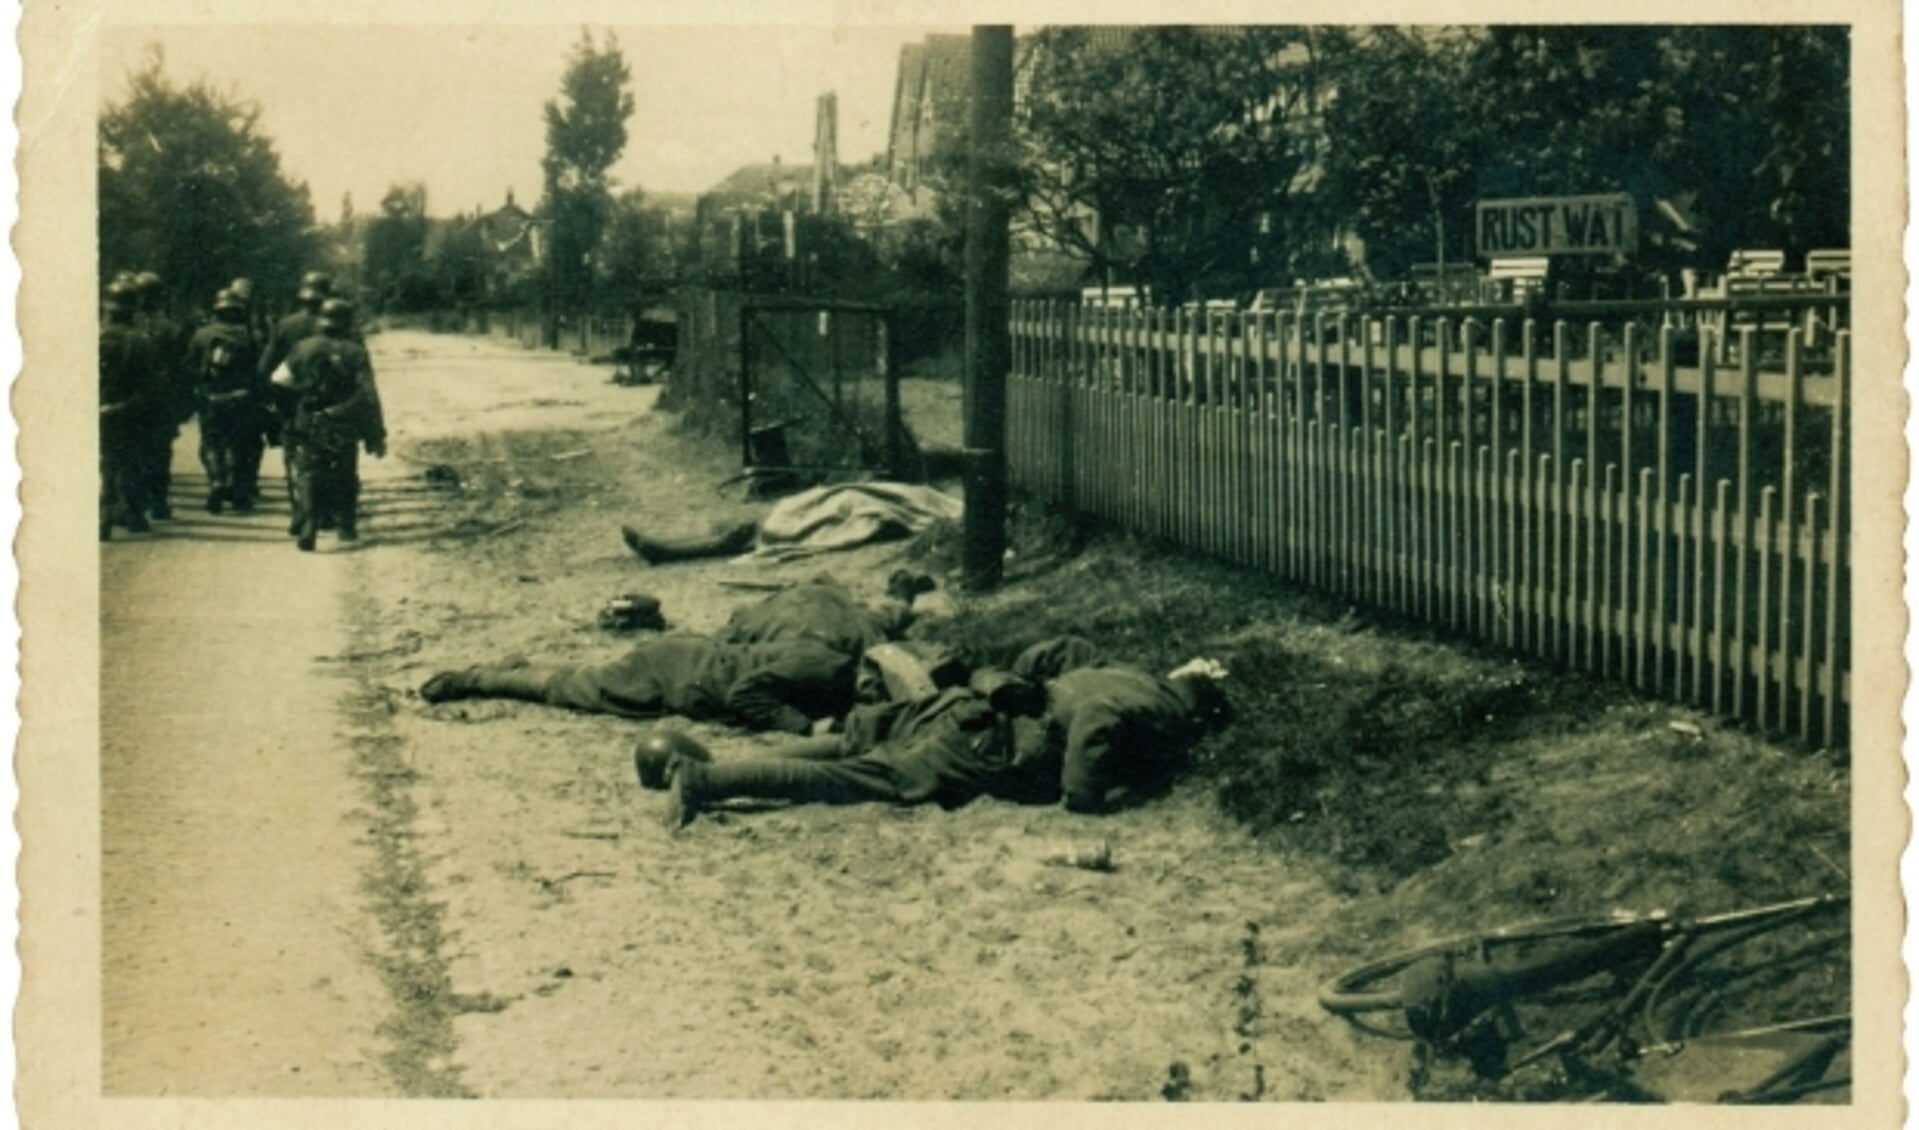 De gesneuvelde Nederlanders liggen bijeen aan de Grebbeweg, gezien richting Rhenen-stad. Nu is de locatie Bollee Events, De Nederlanders werden doodgeschoten in de tuin ernaast. (Foto uit boek/NIOD)